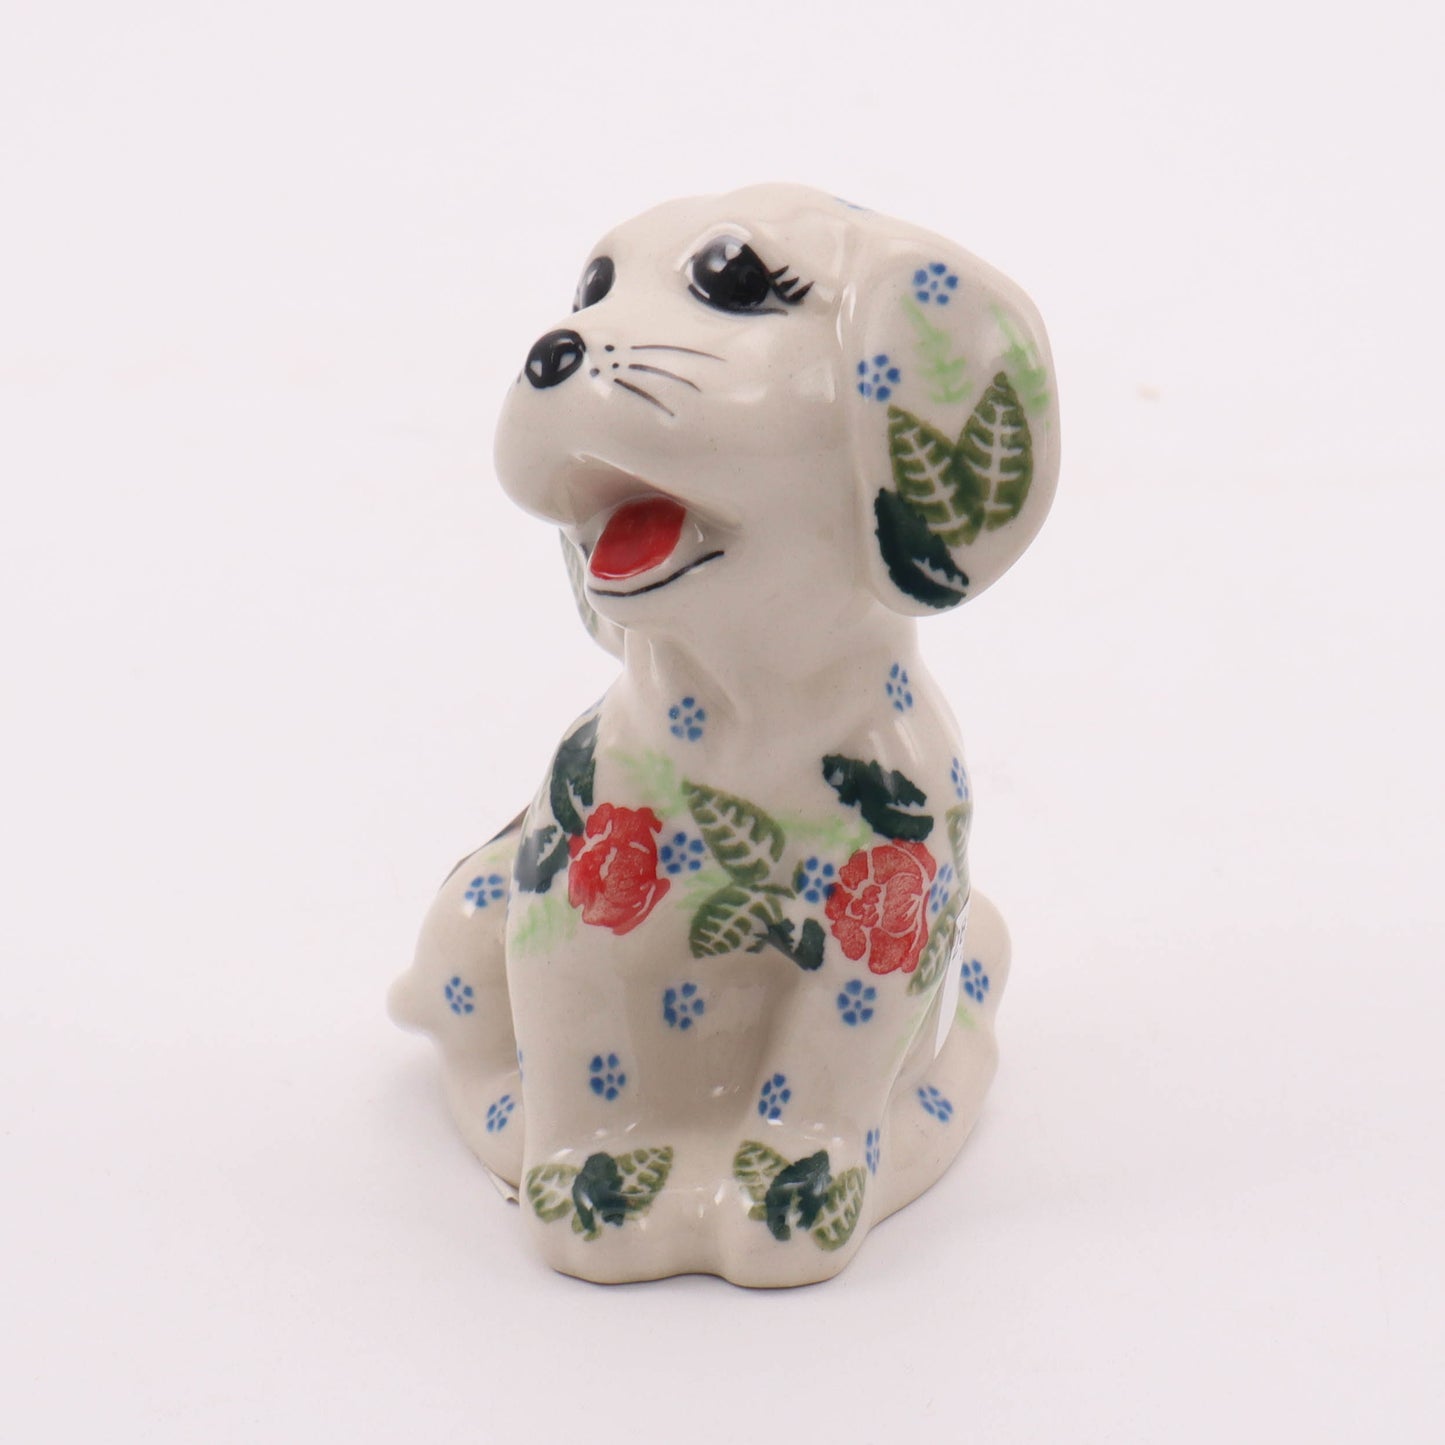 2"x3" Puppy Figurine. Pattern: Red Rose